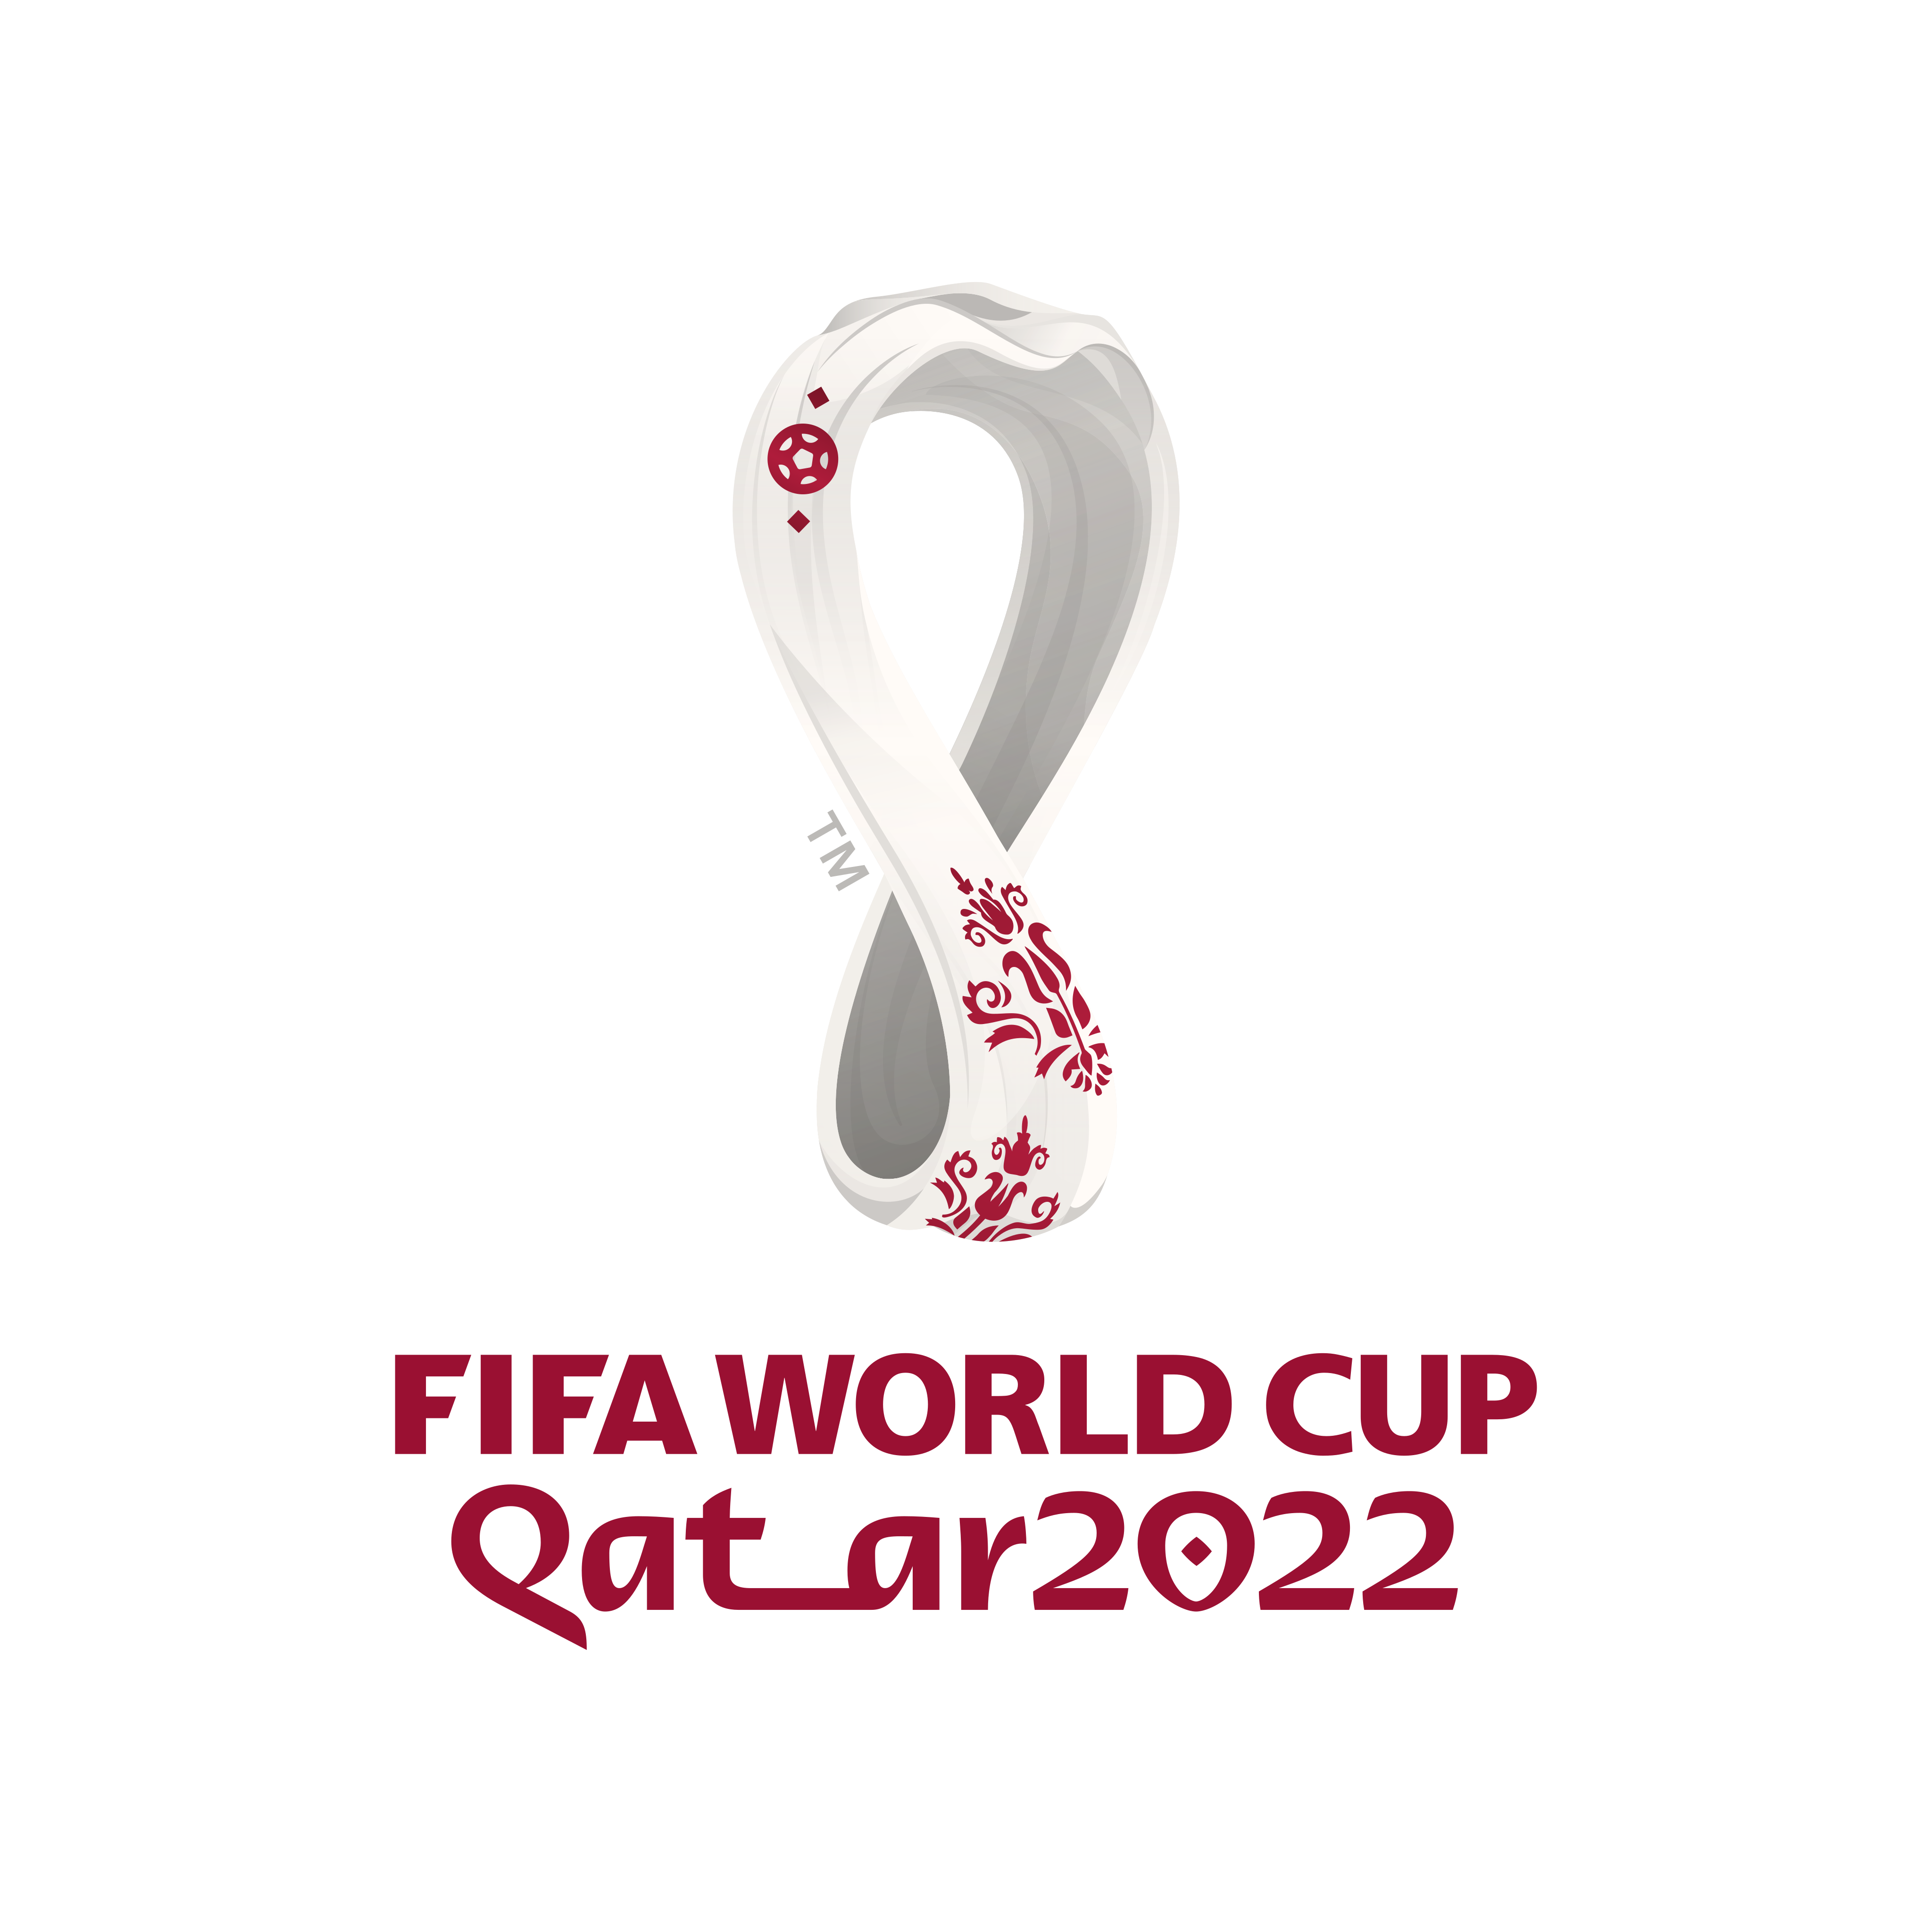 world cup 2022 logo 0 - Copa Mundial de Fútbol Catar 2022 Logo